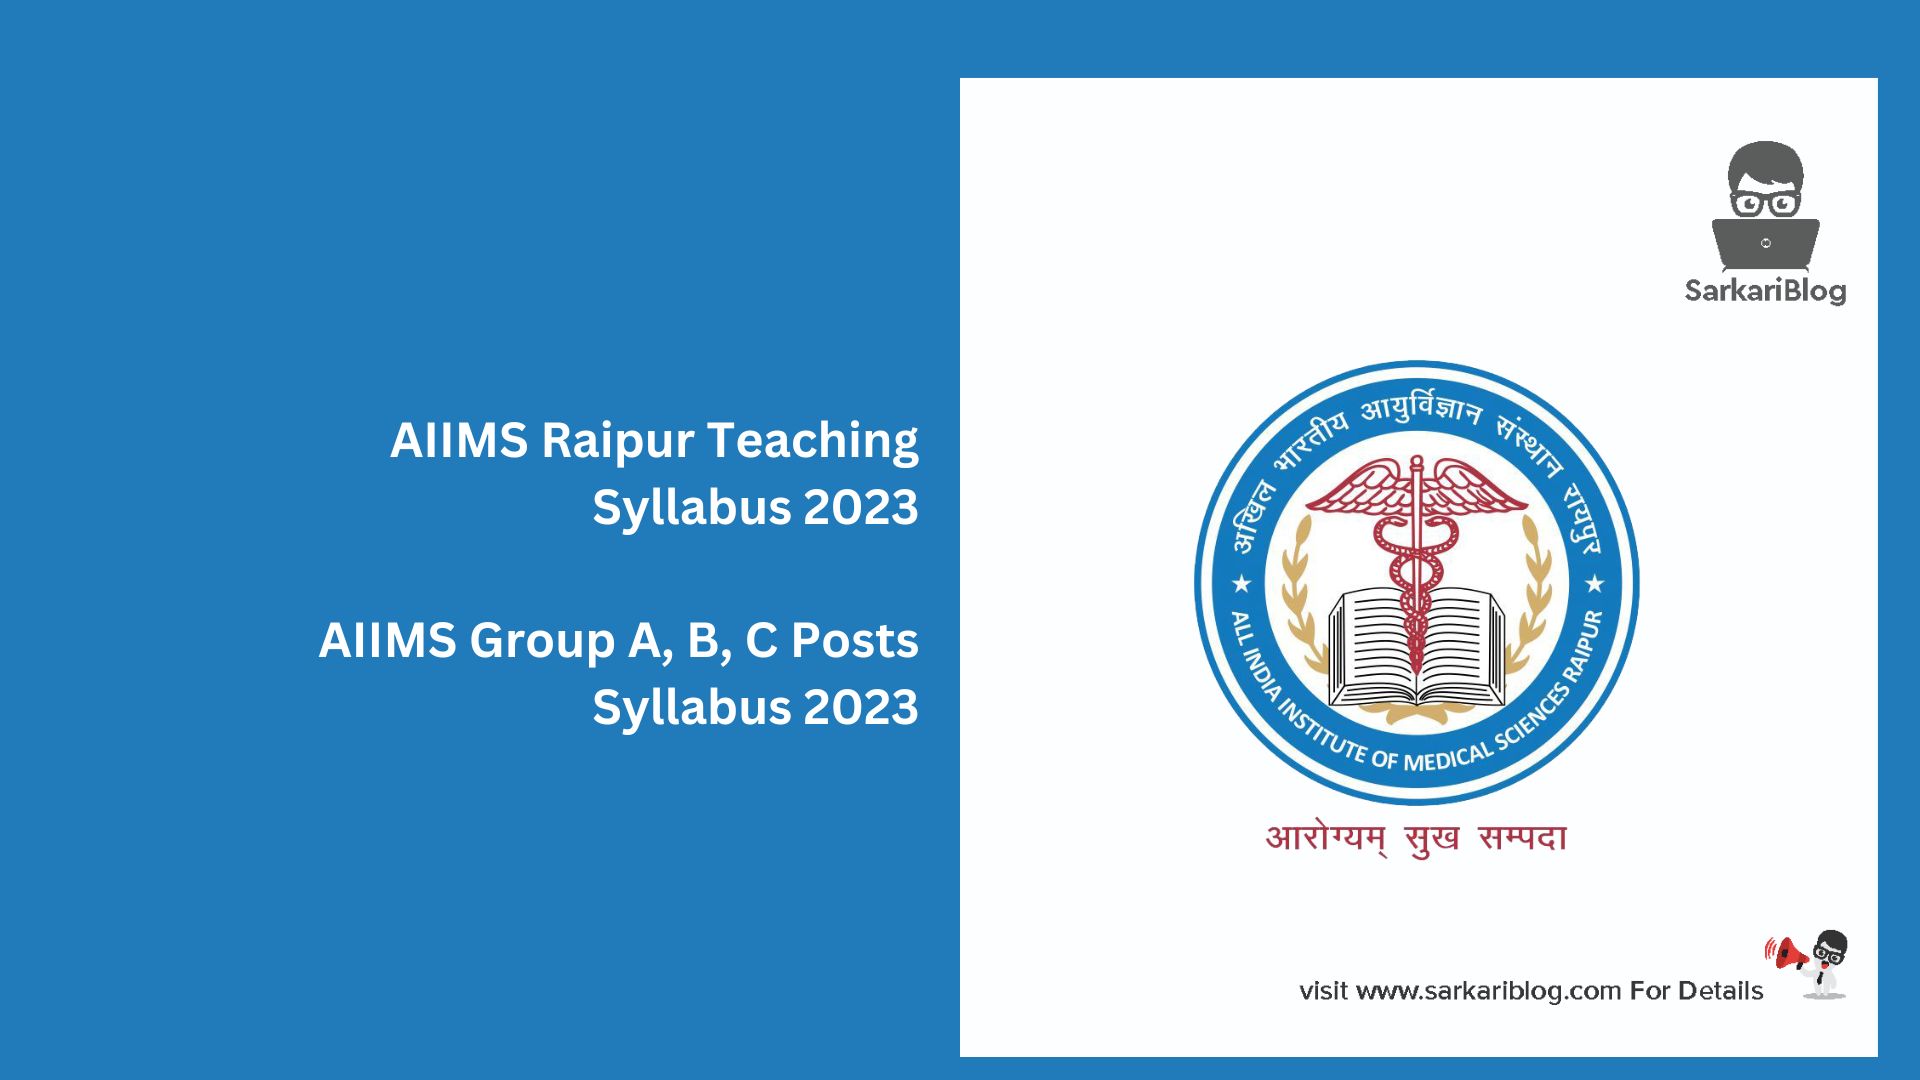 AIIMS Raipur Teaching Syllabus 2023